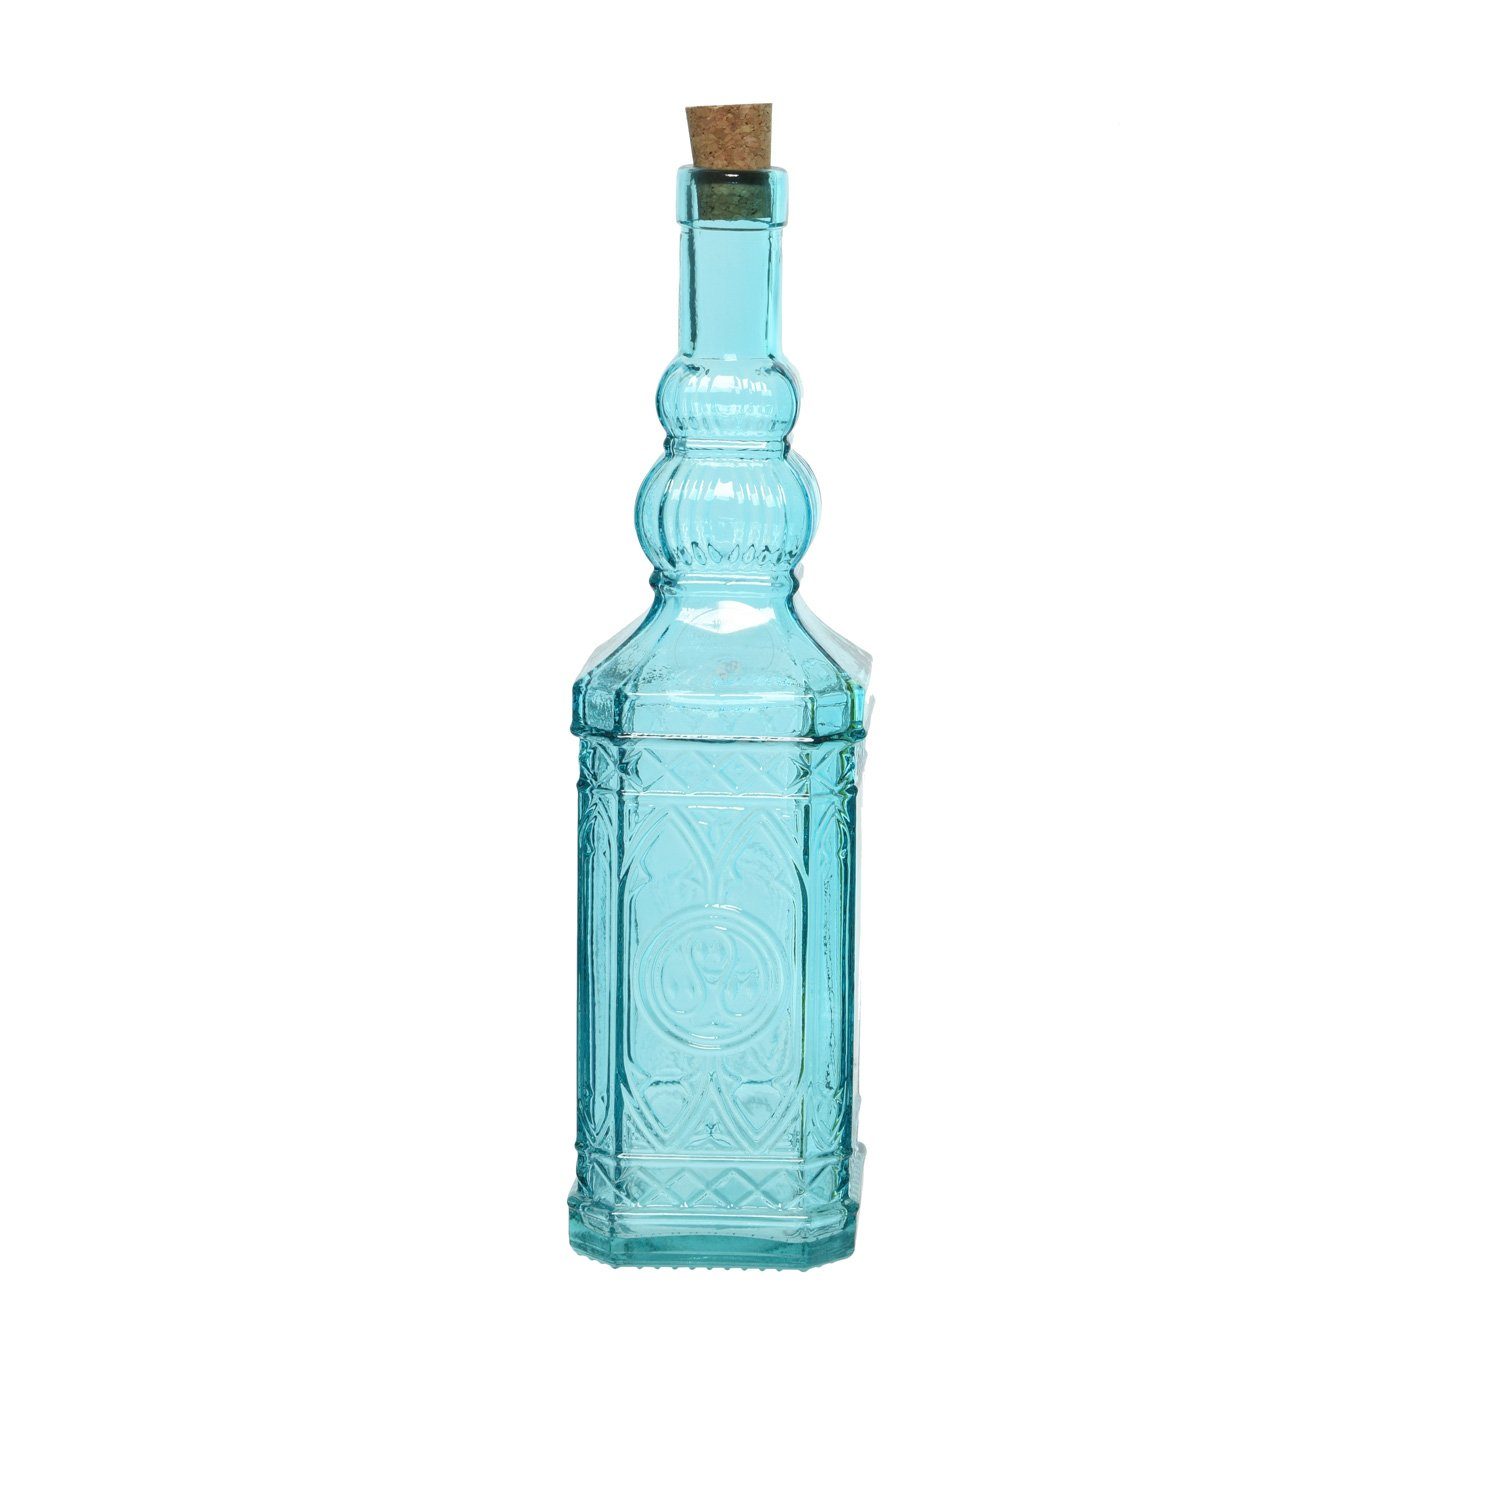 Deko m. MARELIDA Recyclingglas, Glasflasche Flasche Vintage Glas, Vorratsglas Likör Korken (1-tlg) Retro